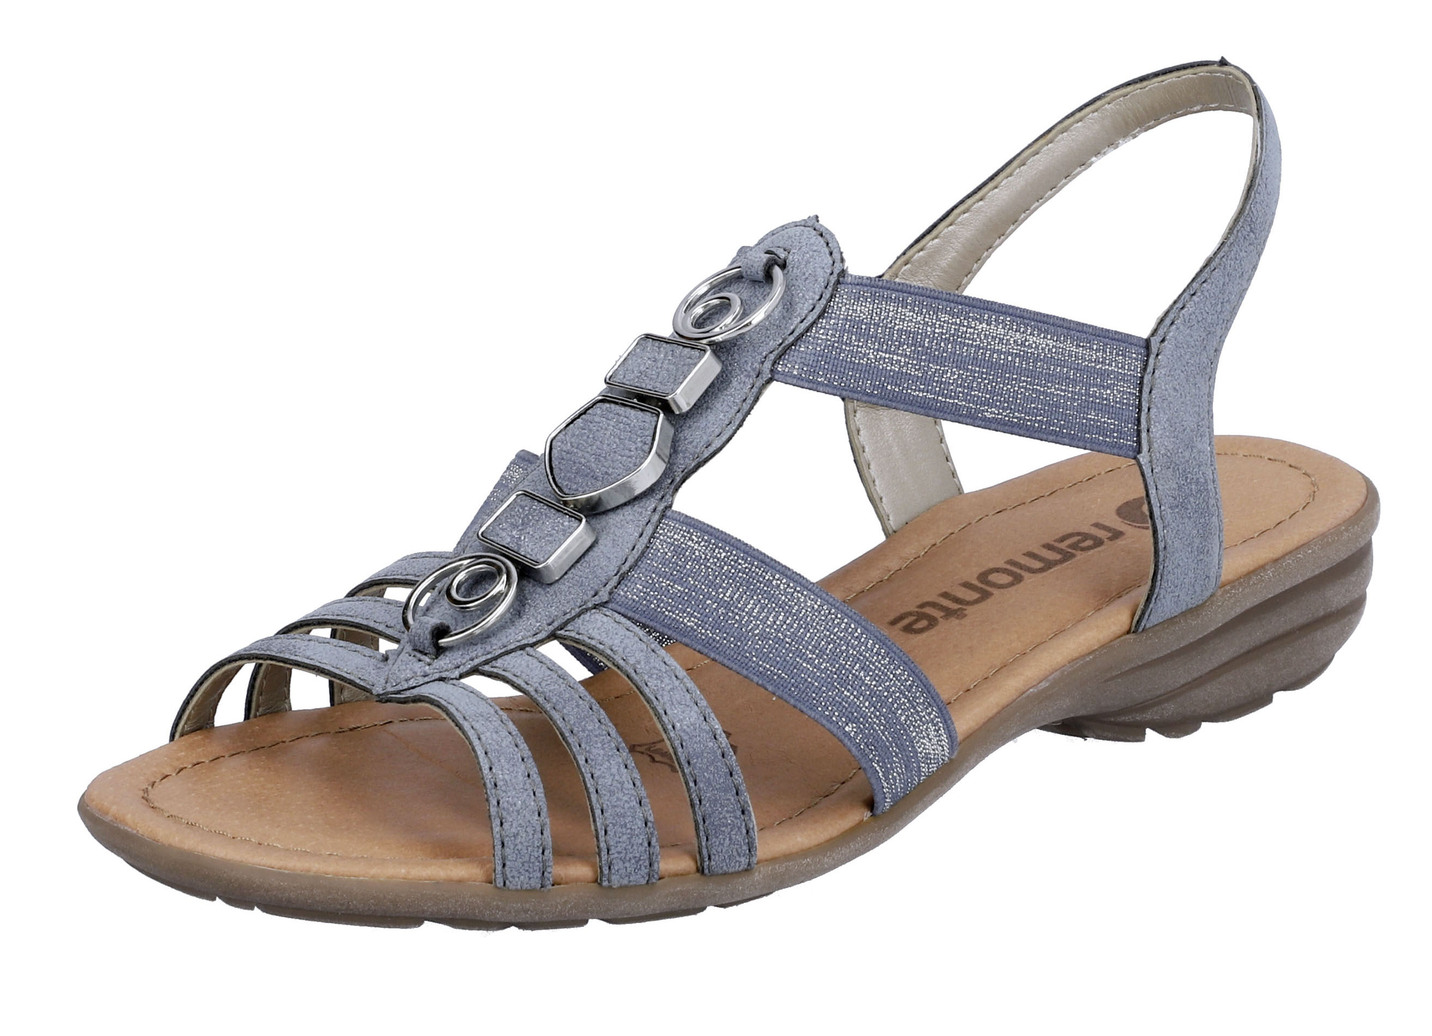 Remonte Riemchen-Sandalen mit Metallschmuck, Jeans, Größe 40 von BADER